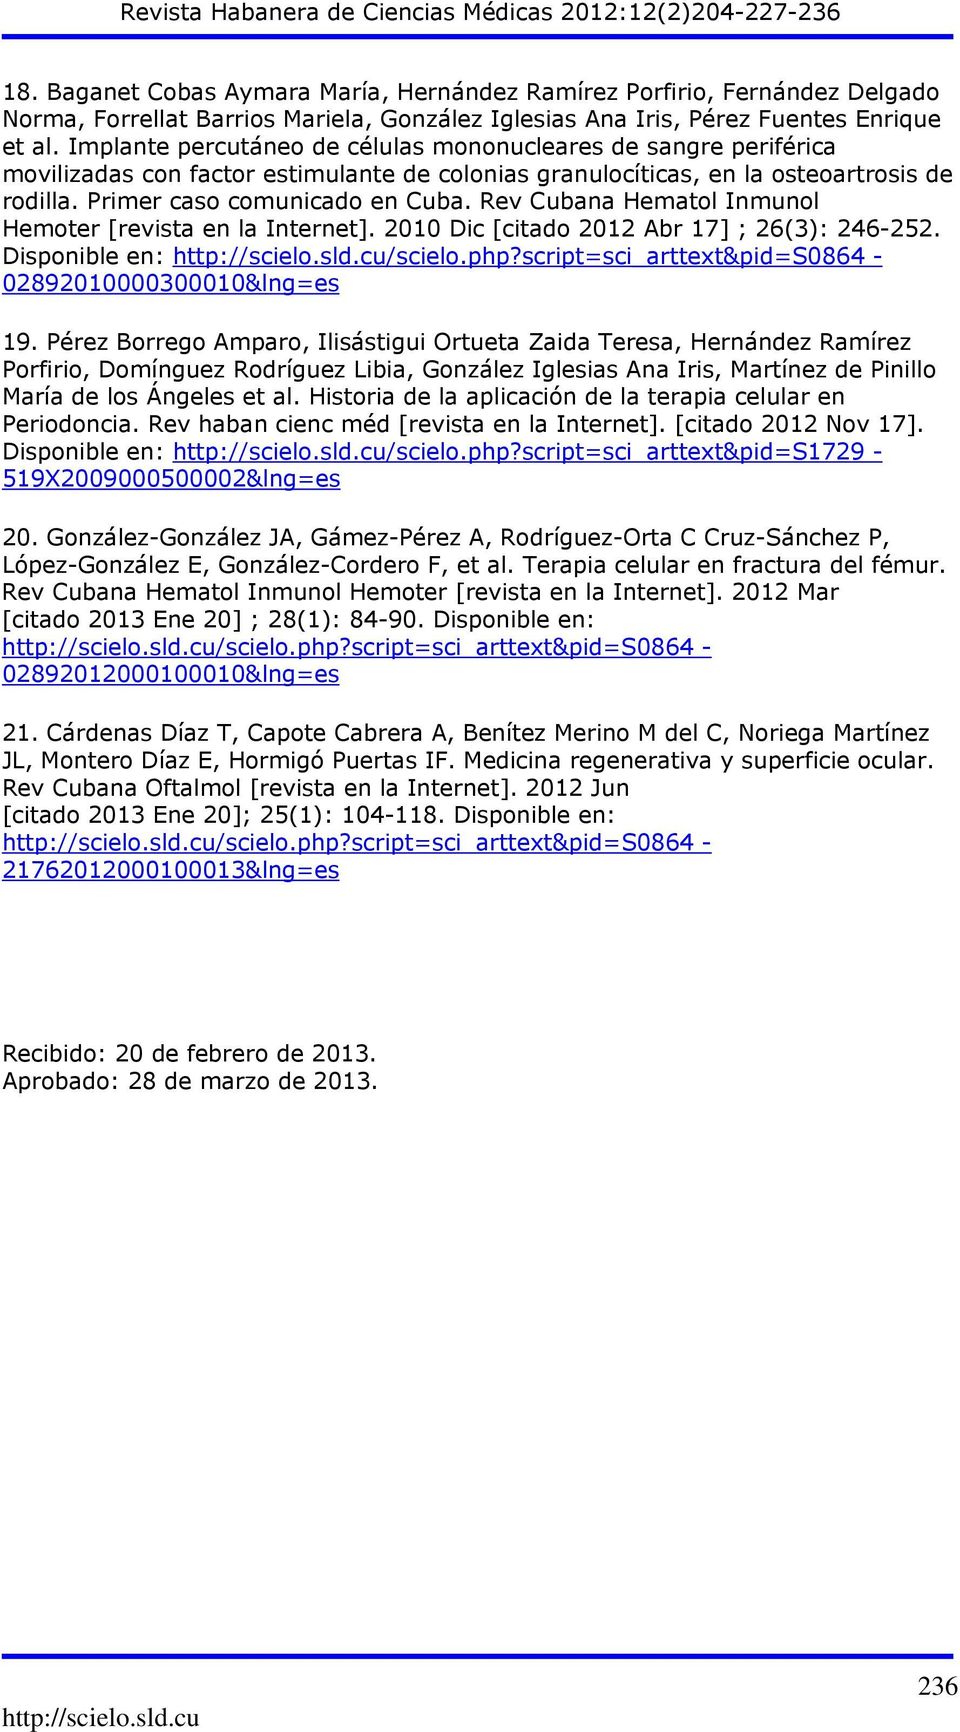 Rev Cubana Hematol Inmunol Hemoter [revista en la Internet]. 2010 Dic [citado 2012 Abr 17] ; 26(3): 246-252. Disponible en: /scielo.php?script=sci_arttext&pid=s0864-02892010000300010&lng=es 19.